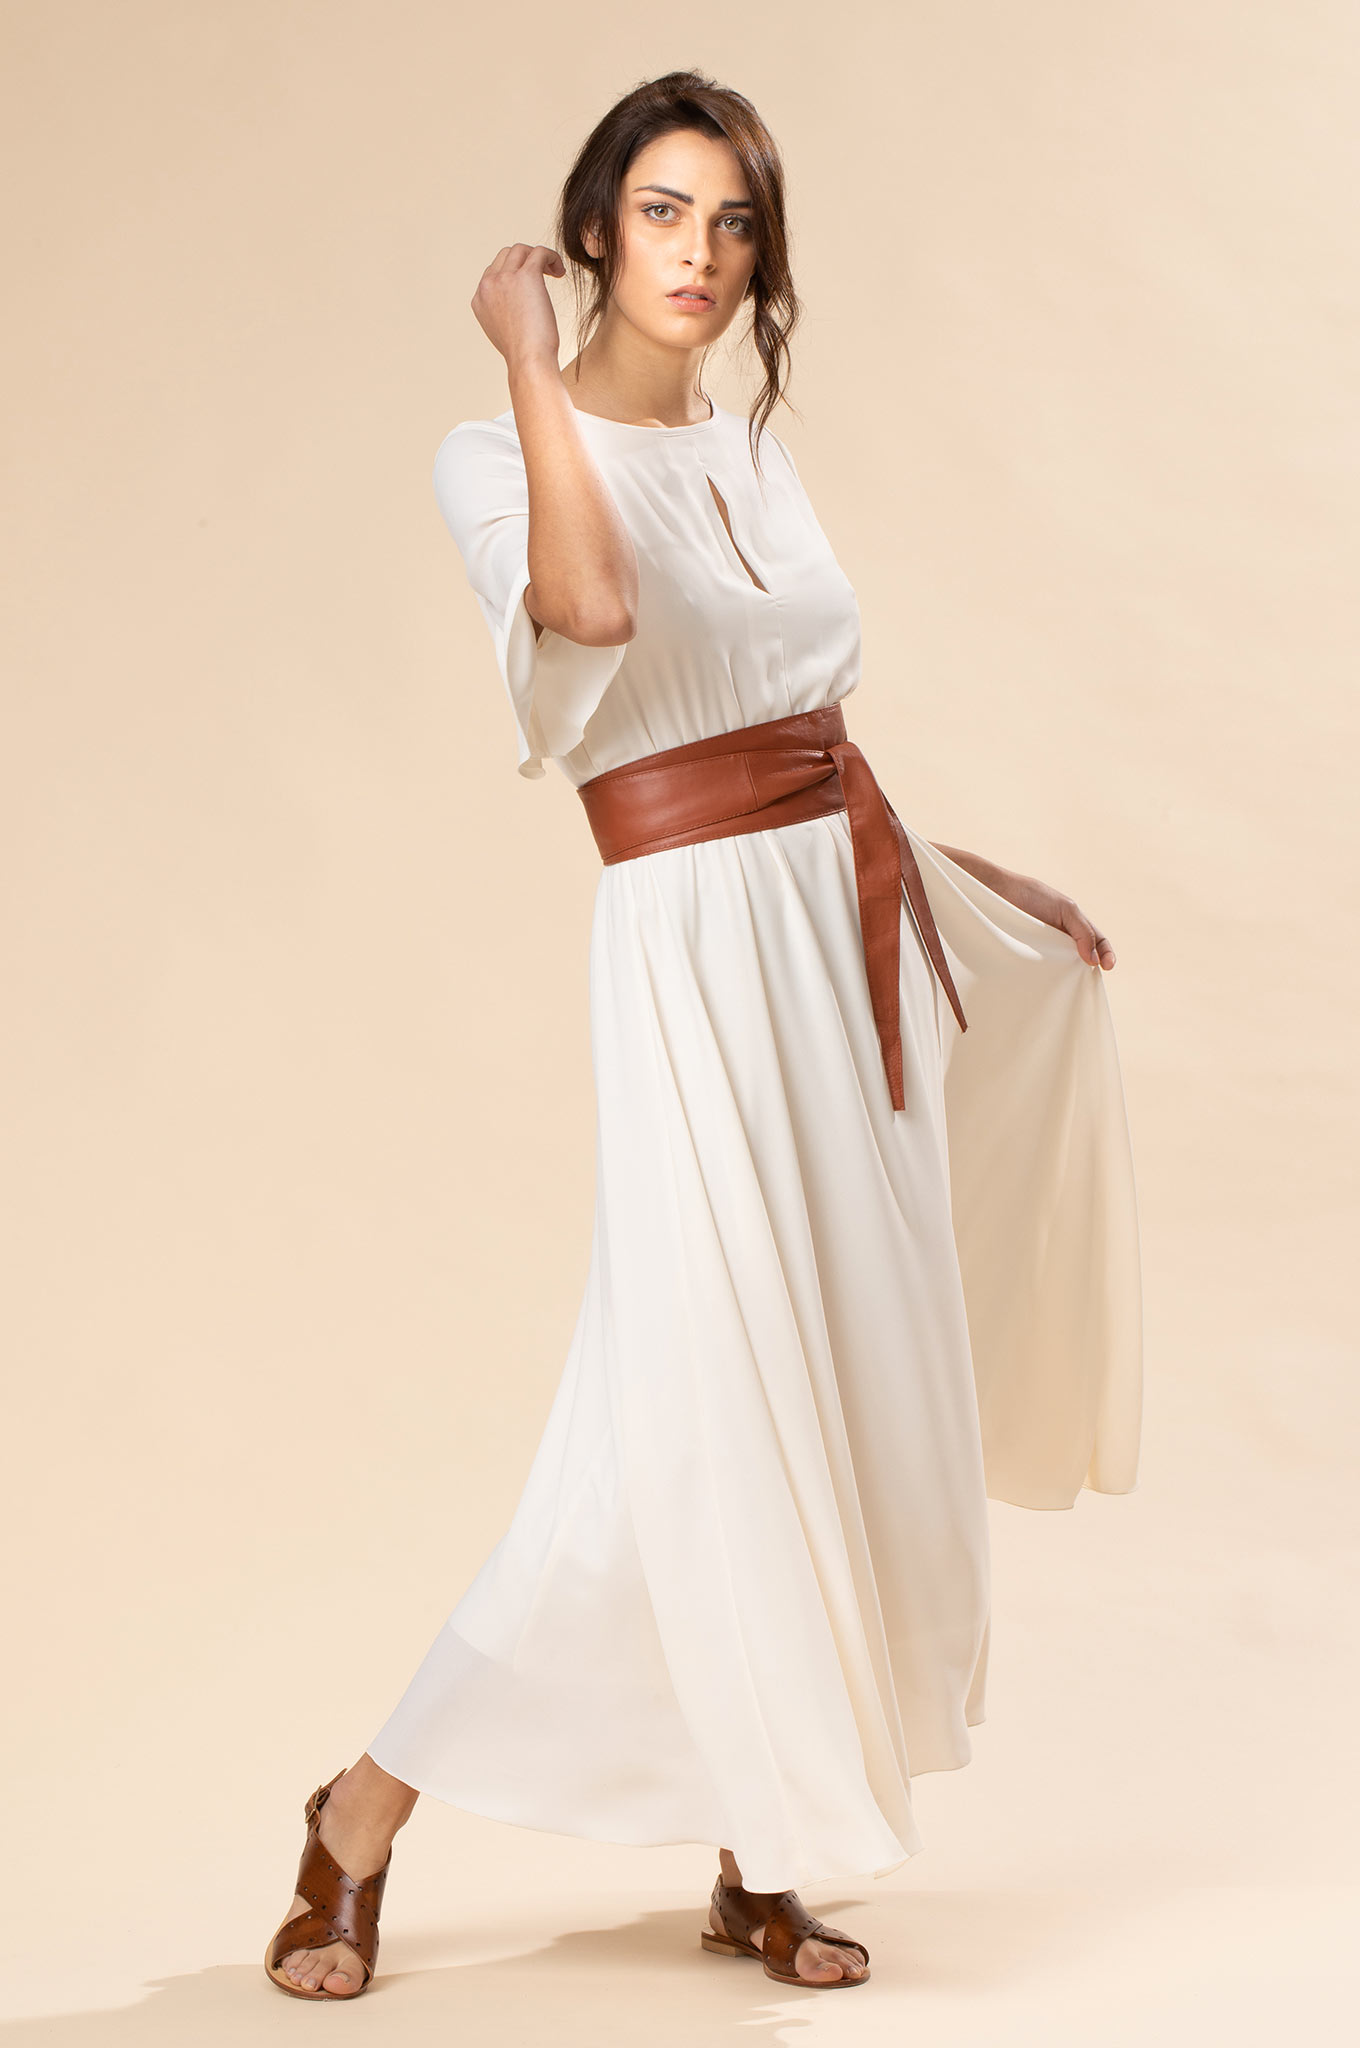 abbigliamento donna primavera 2020 Chiara B: abito bianco georgette